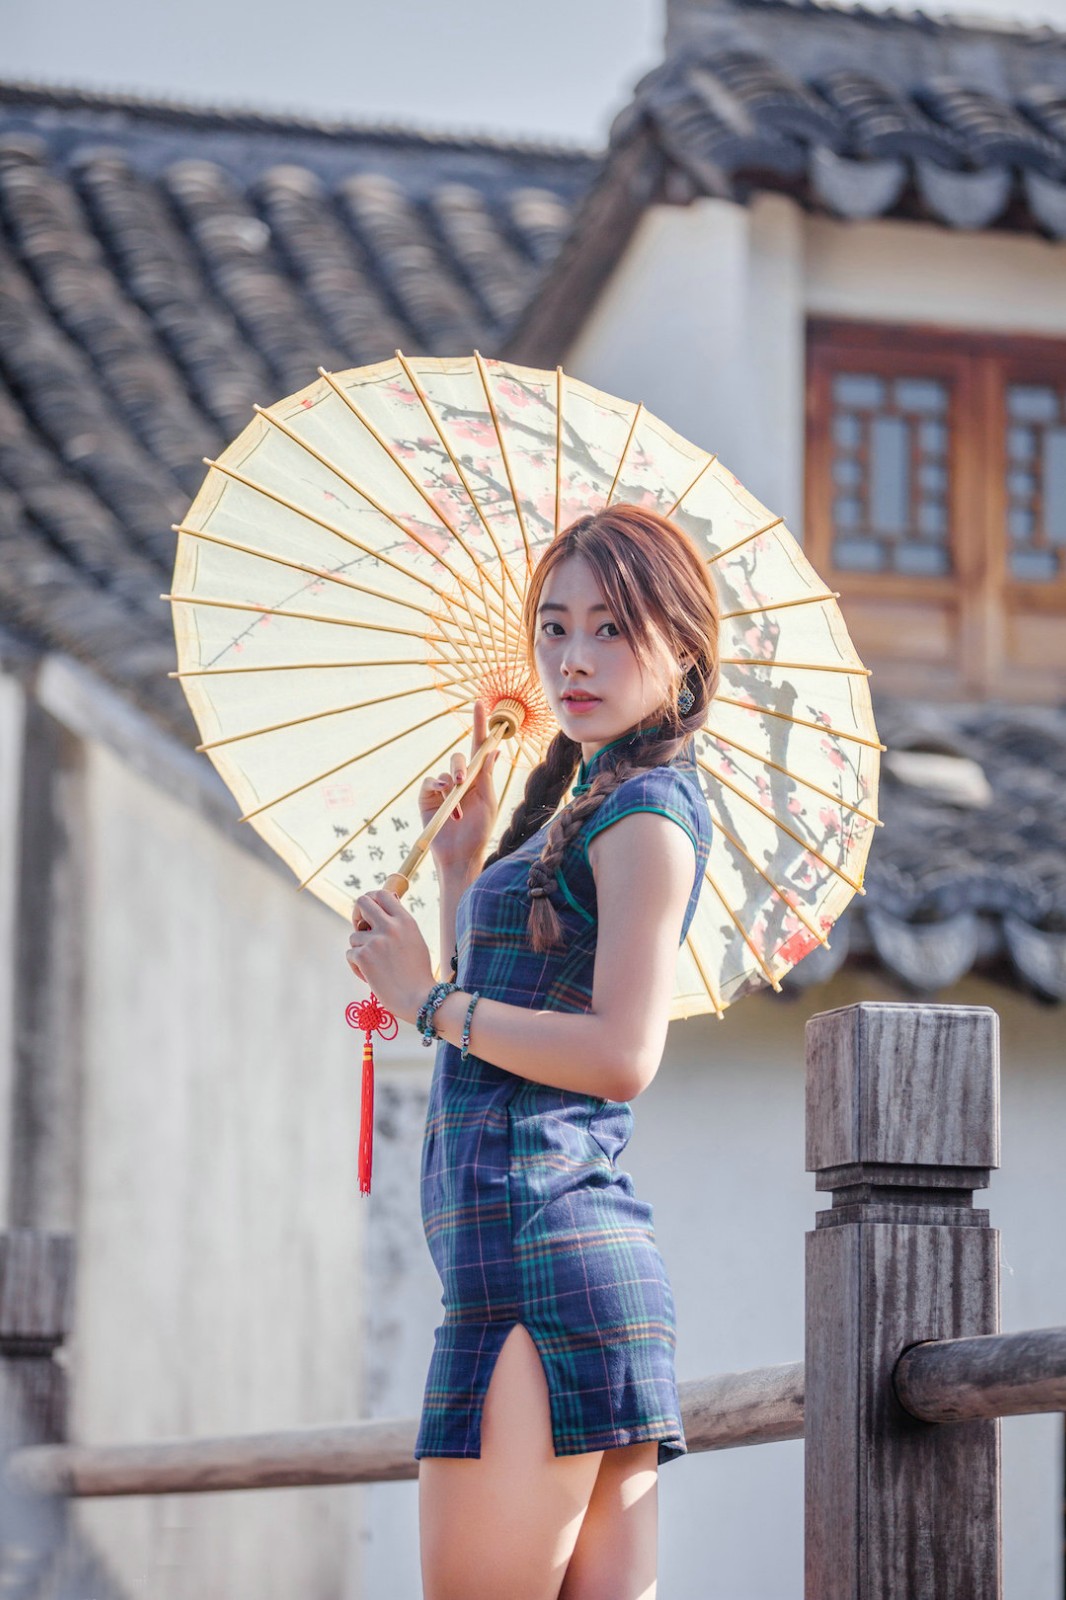 夏日街拍女 [20P]|魅力街拍 - 武当休闲山庄 - 稳定,和谐,人性化的中文社区